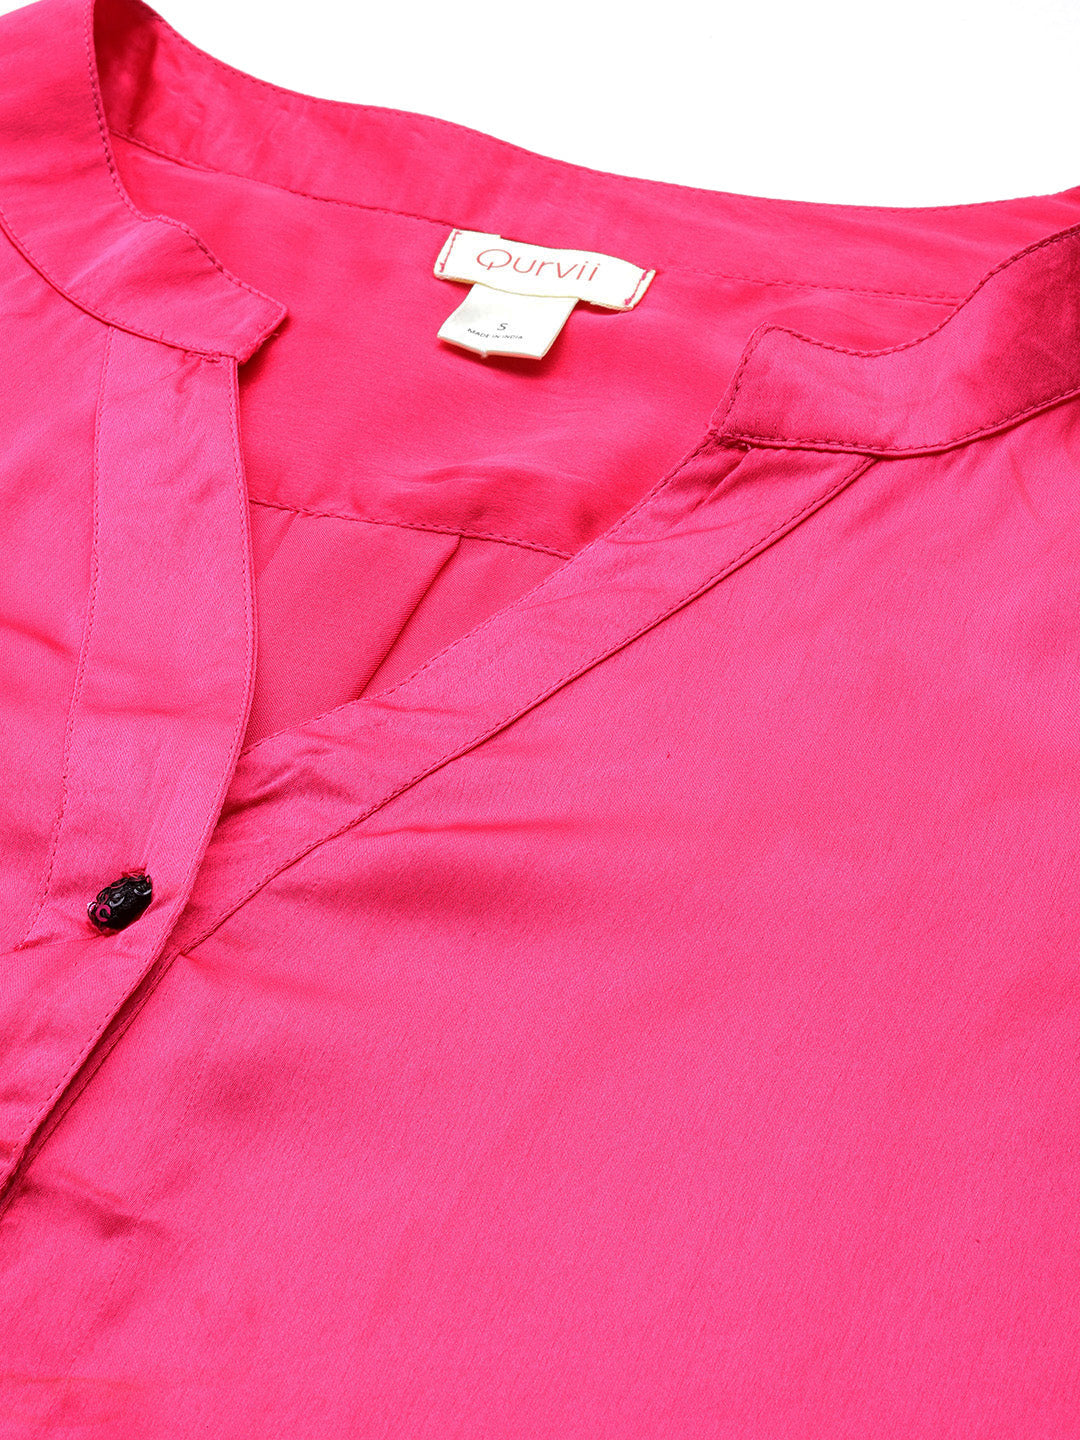 Hot pink half placket mandarin collar satin shirt.